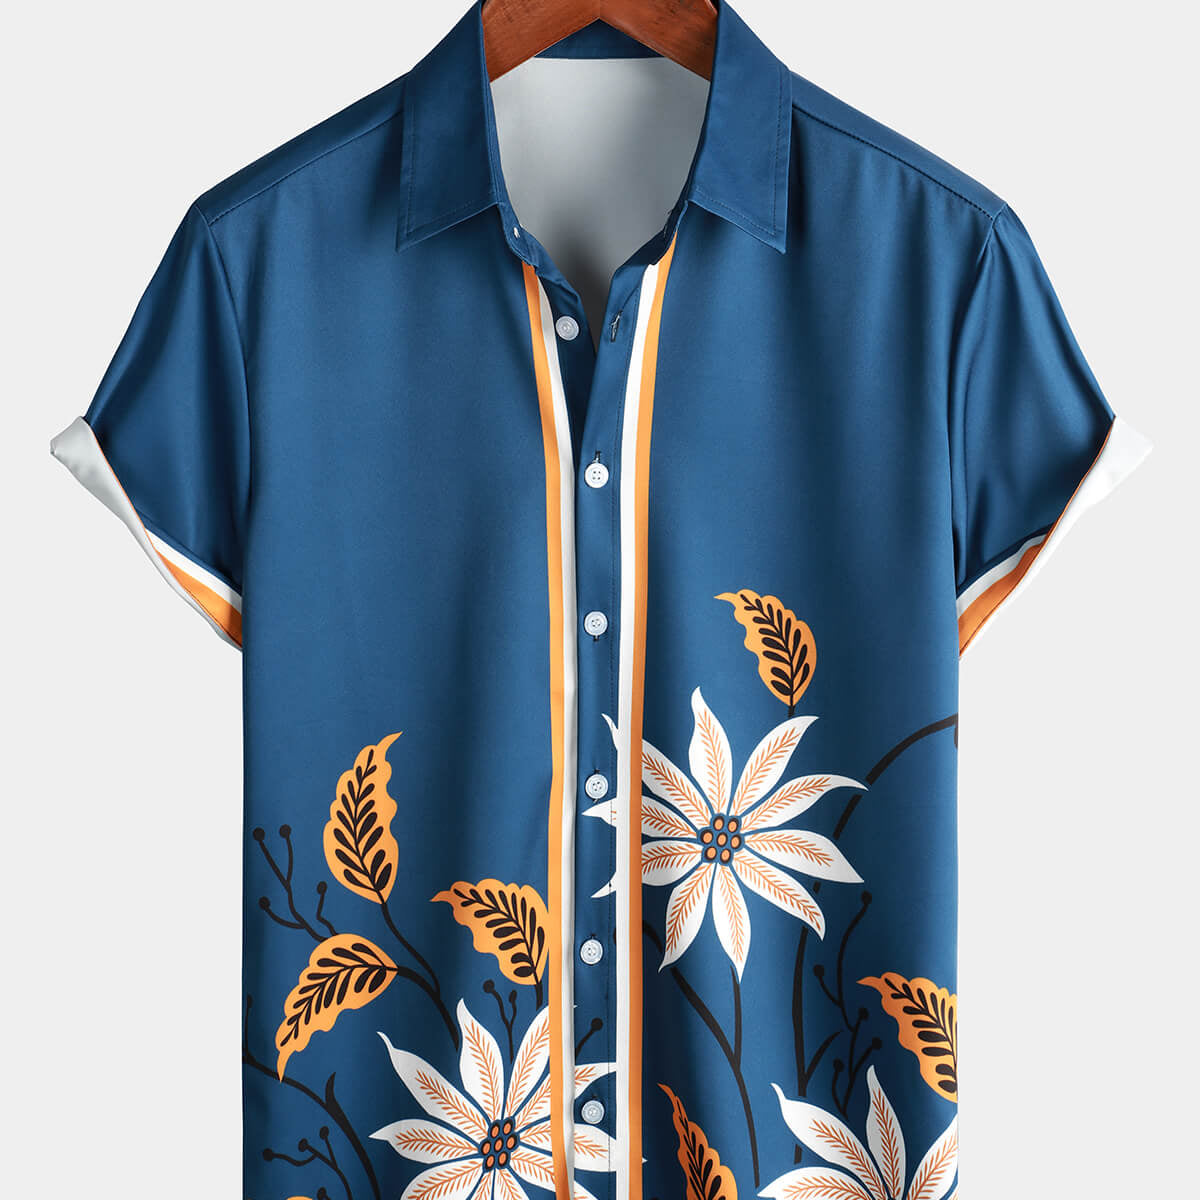 Men's Floral Print Blue Button Up Beach Summer Holiday Short Sleeve Shirt